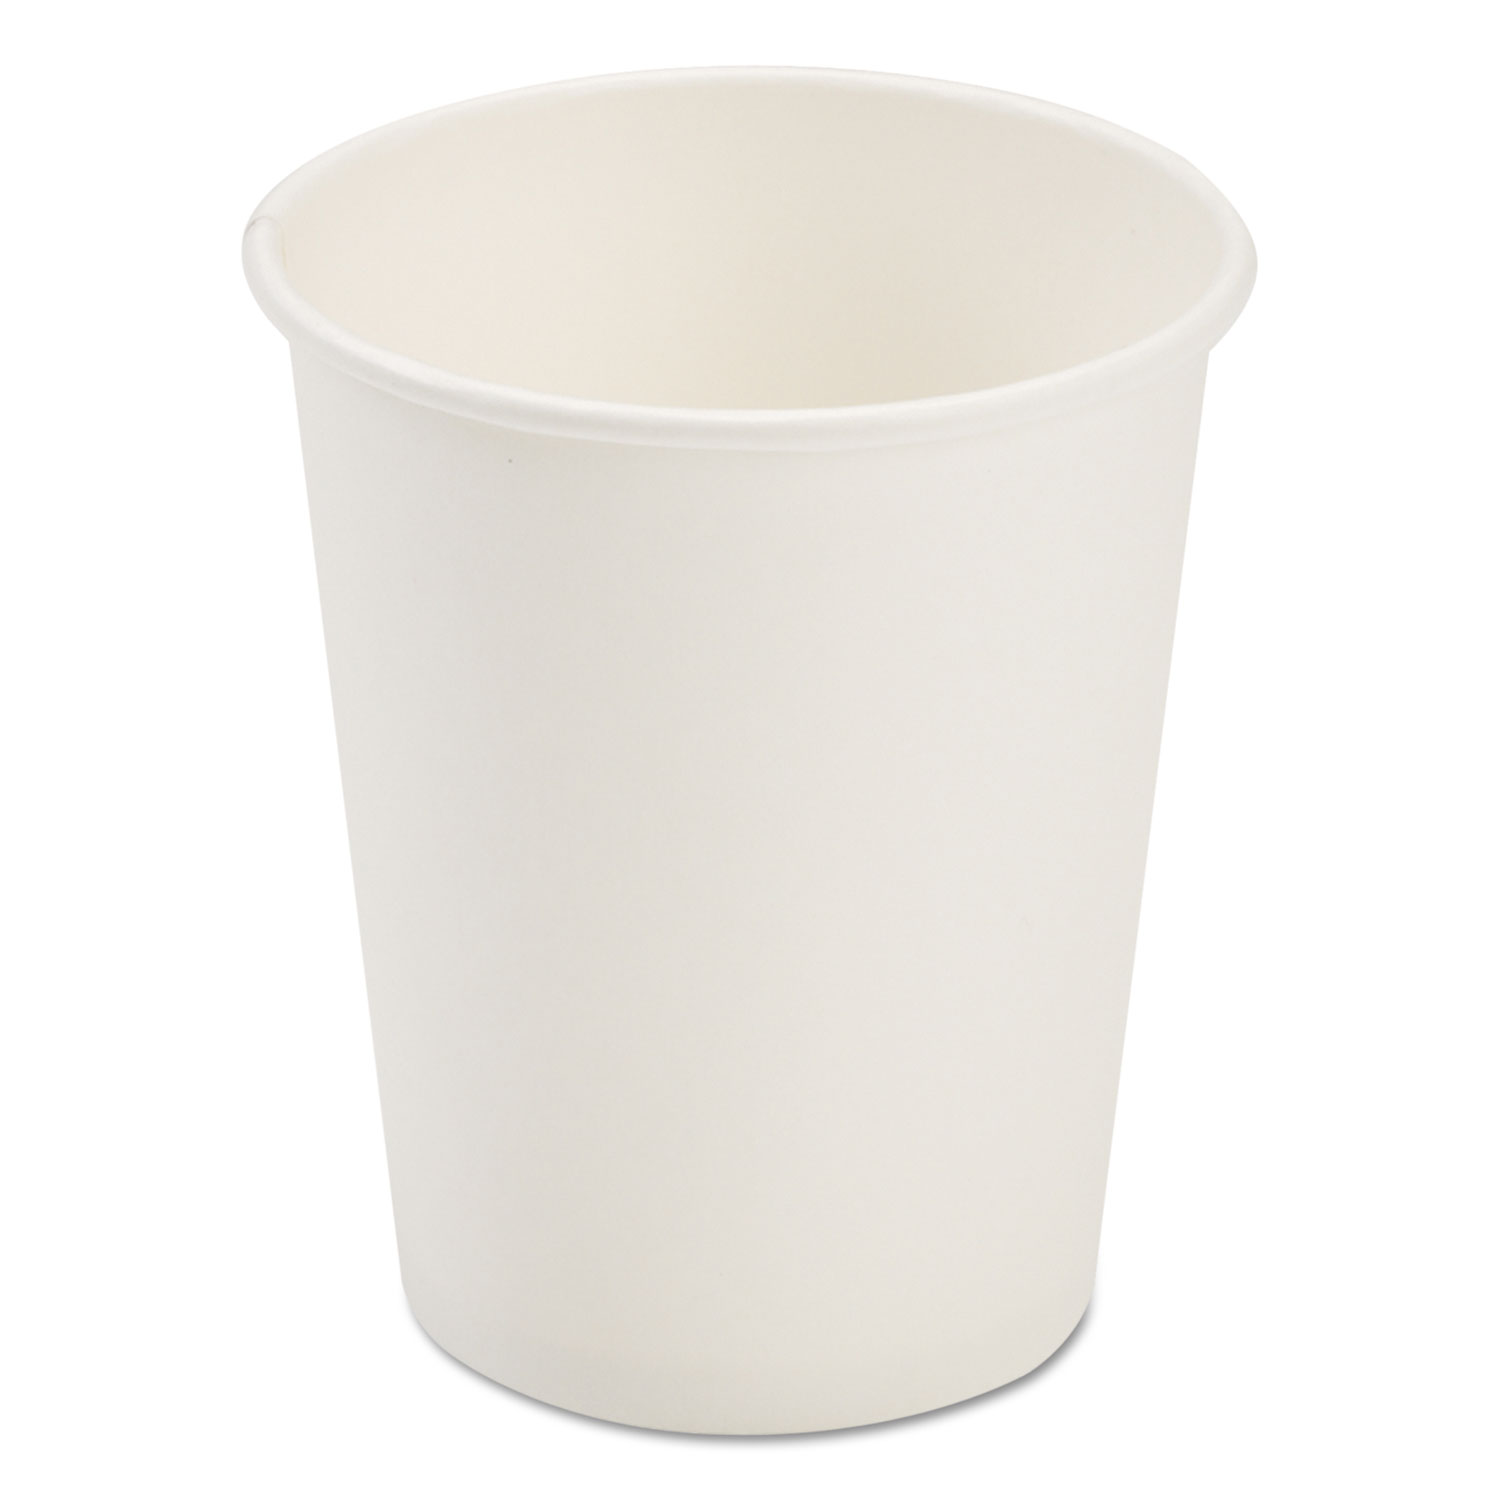  Pactiv D8HCW Dopaco Paper Hot Cups, 8 oz, White, 50/Bag, 20 Bags/Carton (PCTD8HCW) 